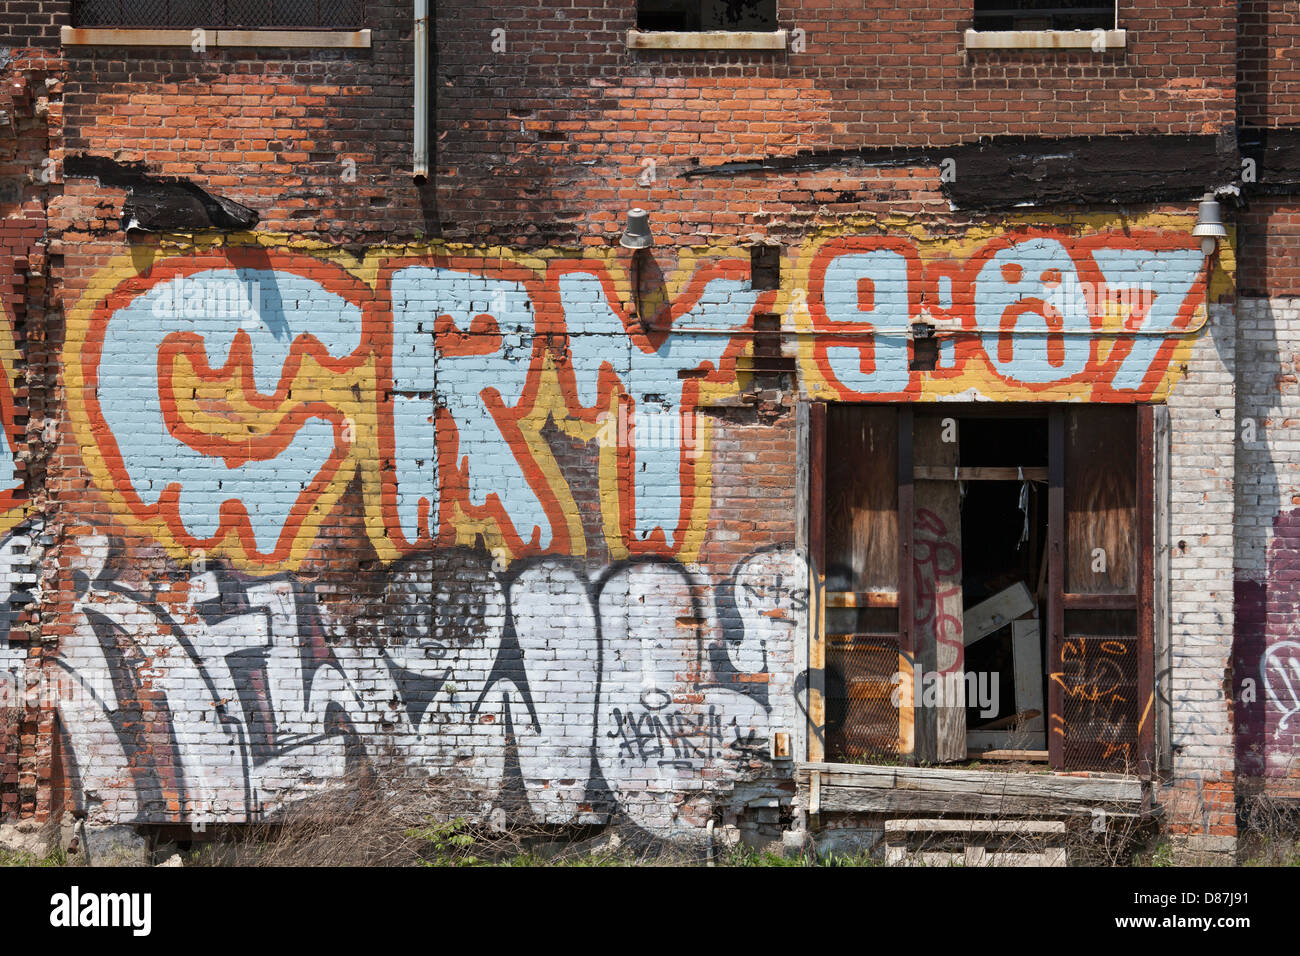 Detroit, Michigan - Graffiti sur le mur d'un bâtiment abandonné. Banque D'Images